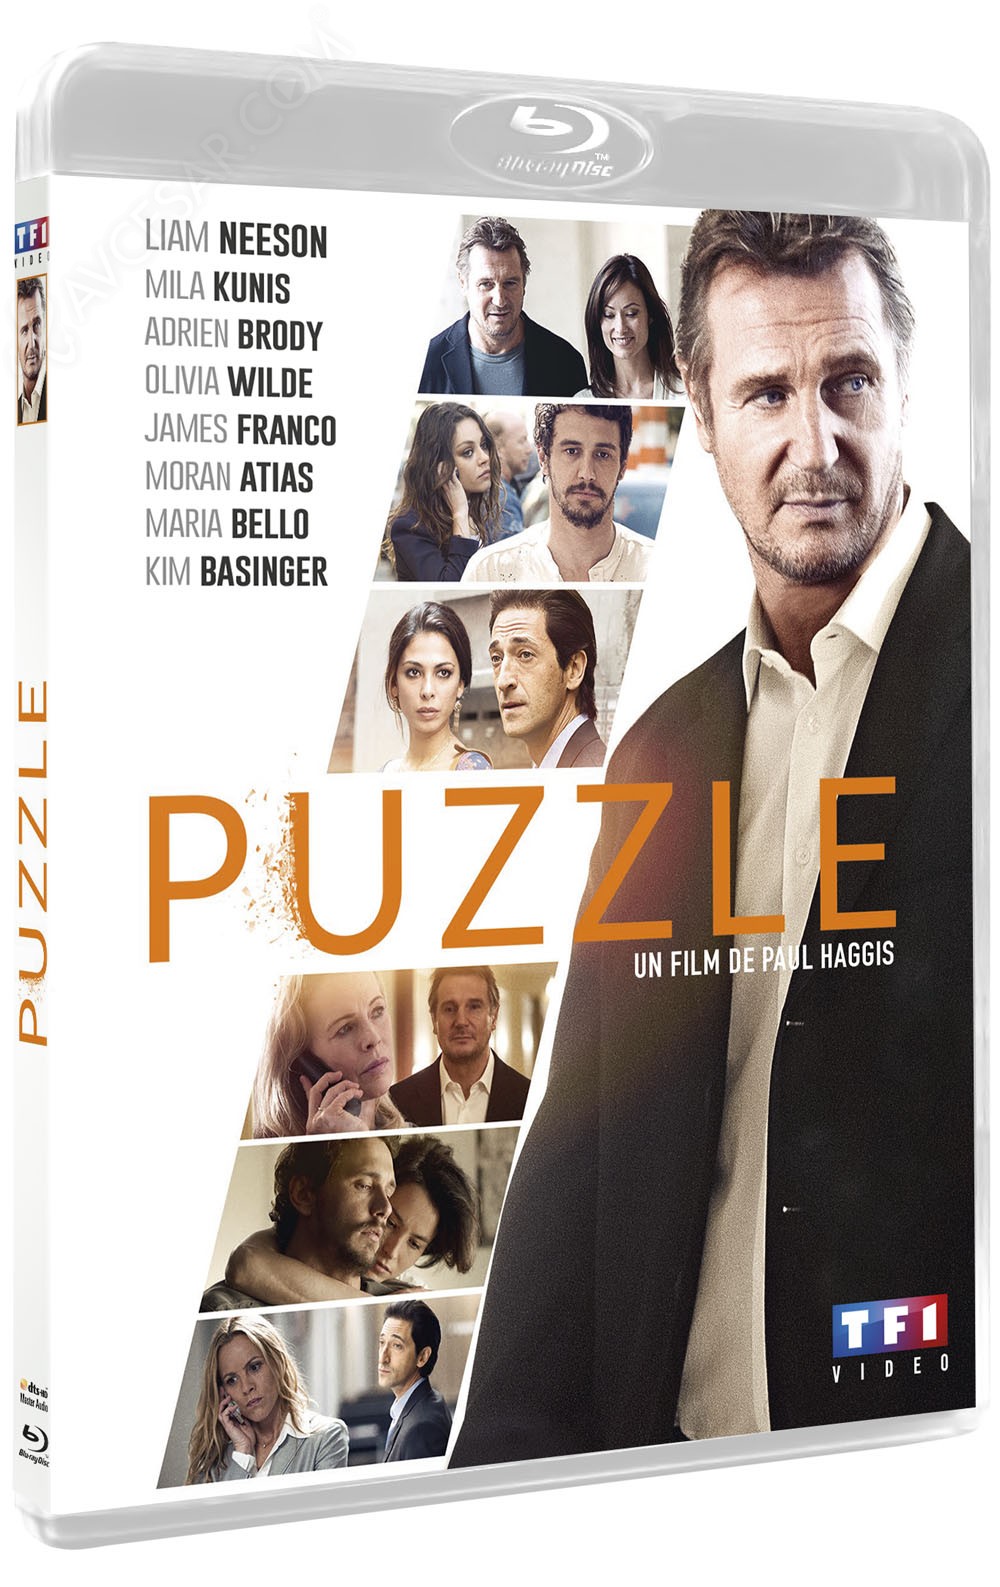 Puzzle, un film de Paul Haggis (DVD)